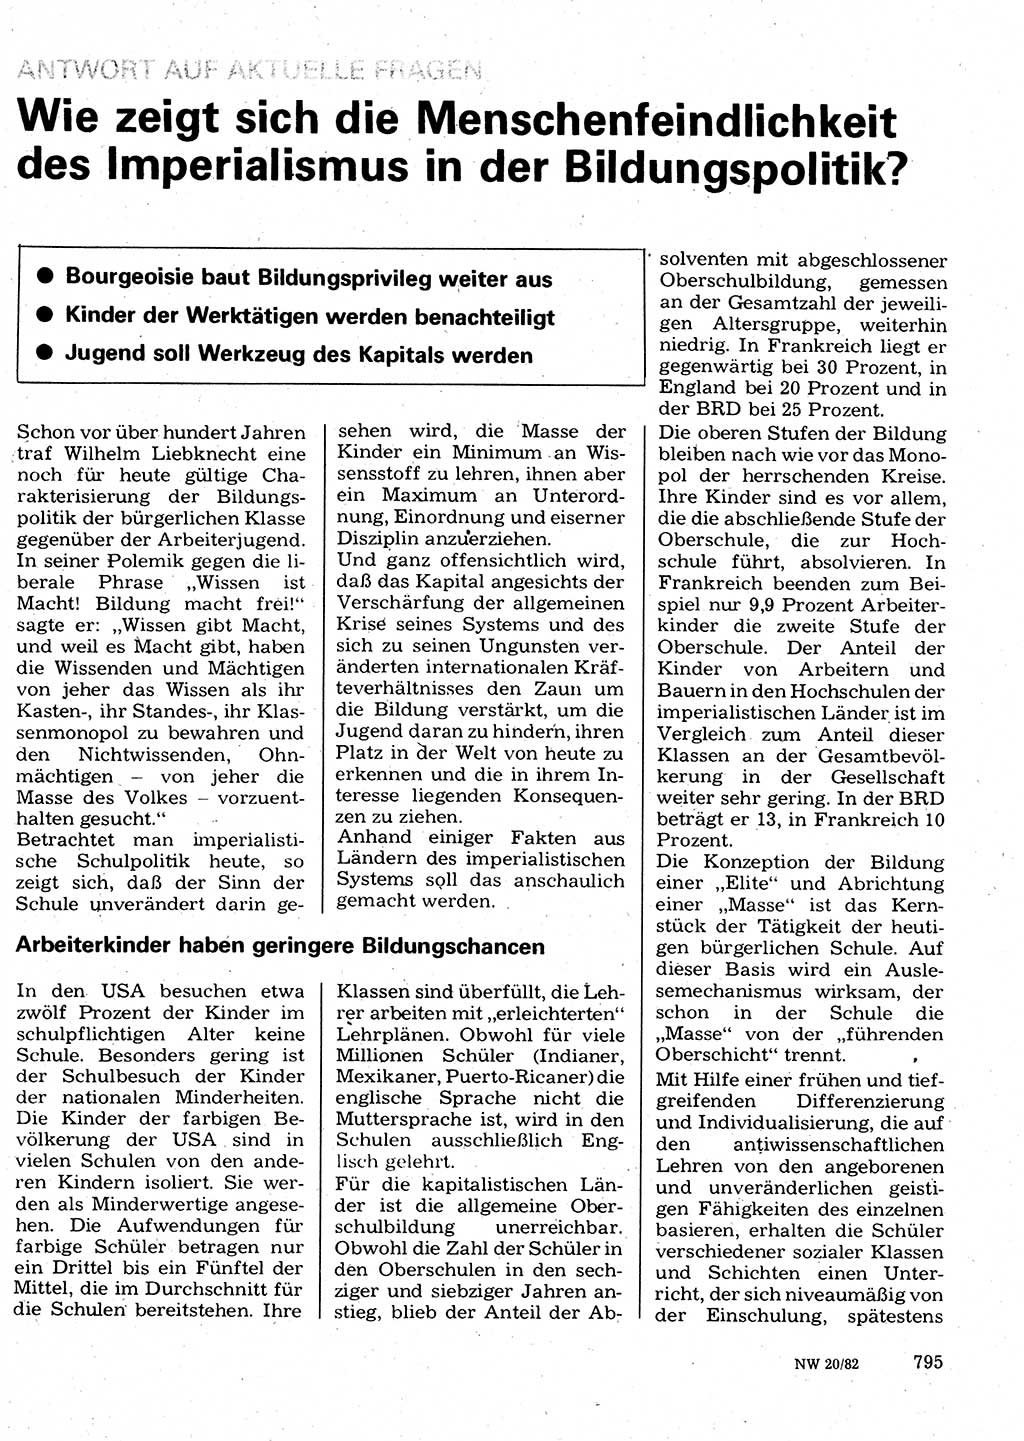 Neuer Weg (NW), Organ des Zentralkomitees (ZK) der SED (Sozialistische Einheitspartei Deutschlands) für Fragen des Parteilebens, 37. Jahrgang [Deutsche Demokratische Republik (DDR)] 1982, Seite 795 (NW ZK SED DDR 1982, S. 795)